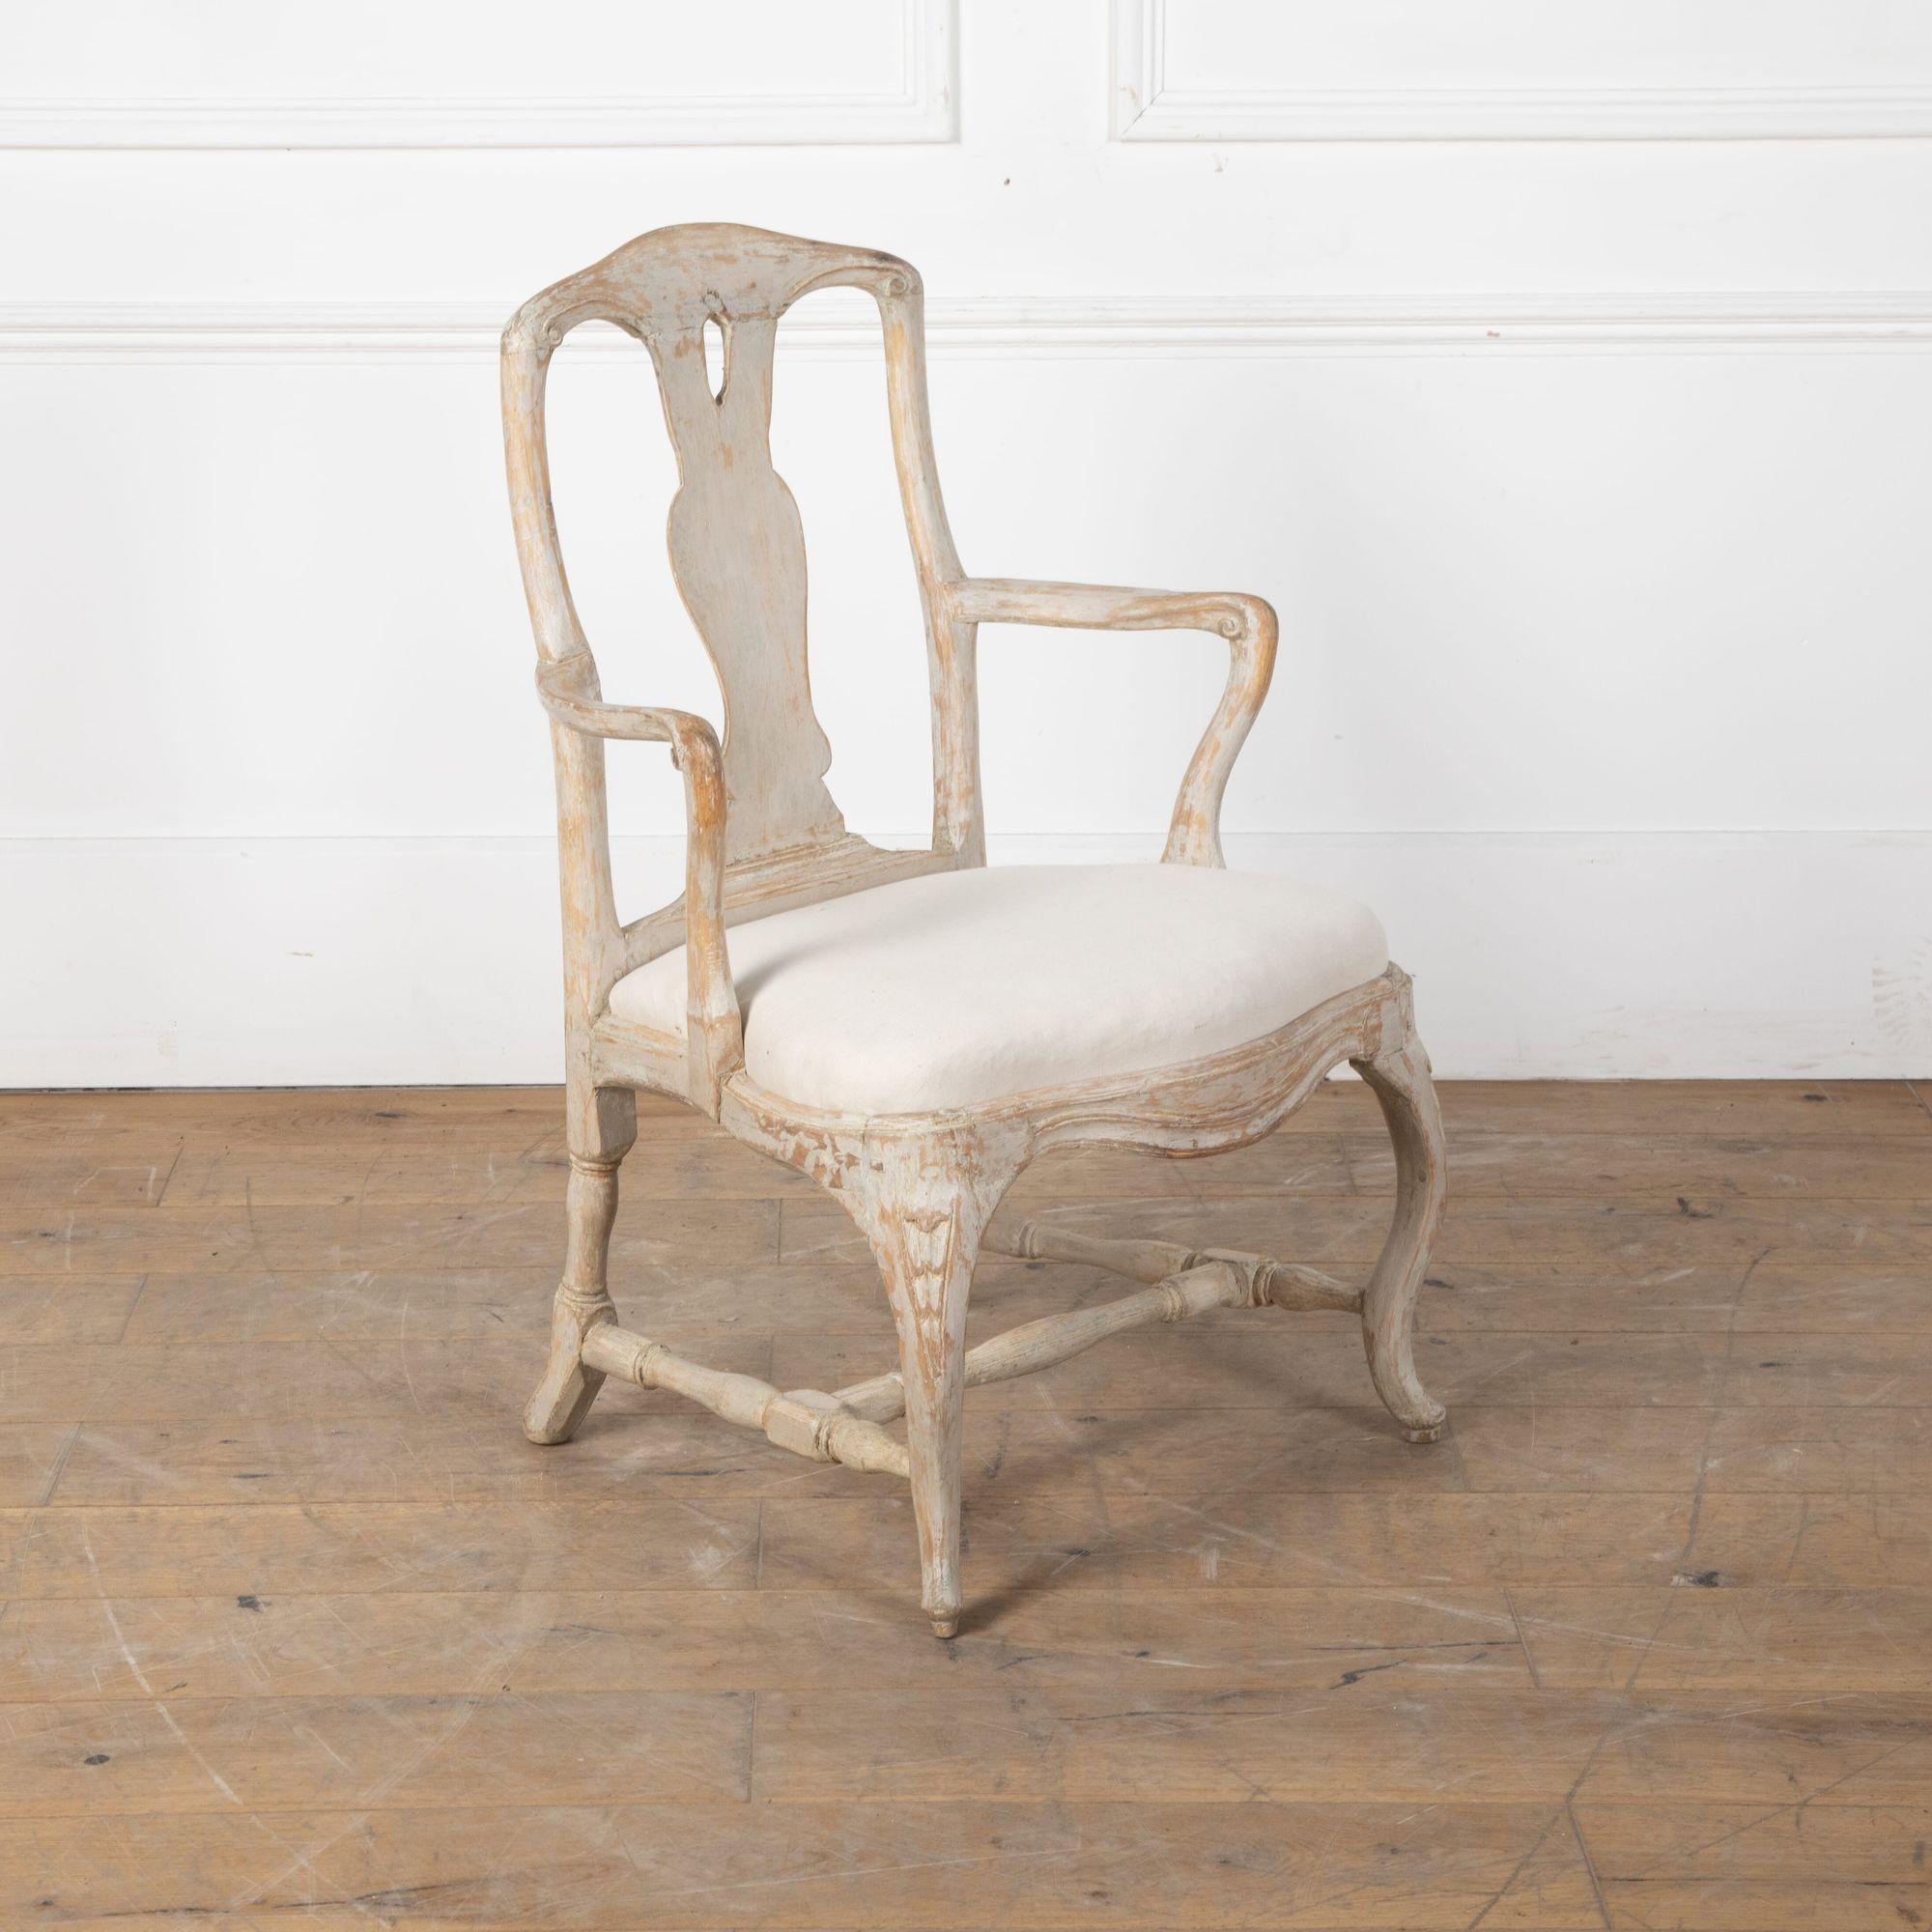 Fauteuil rococo de la fin du XVIIIe siècle, fabriqué à Stockholm.
Cette chaise est grattée jusqu'à sa peinture d'origine. 
vers 1770. 


